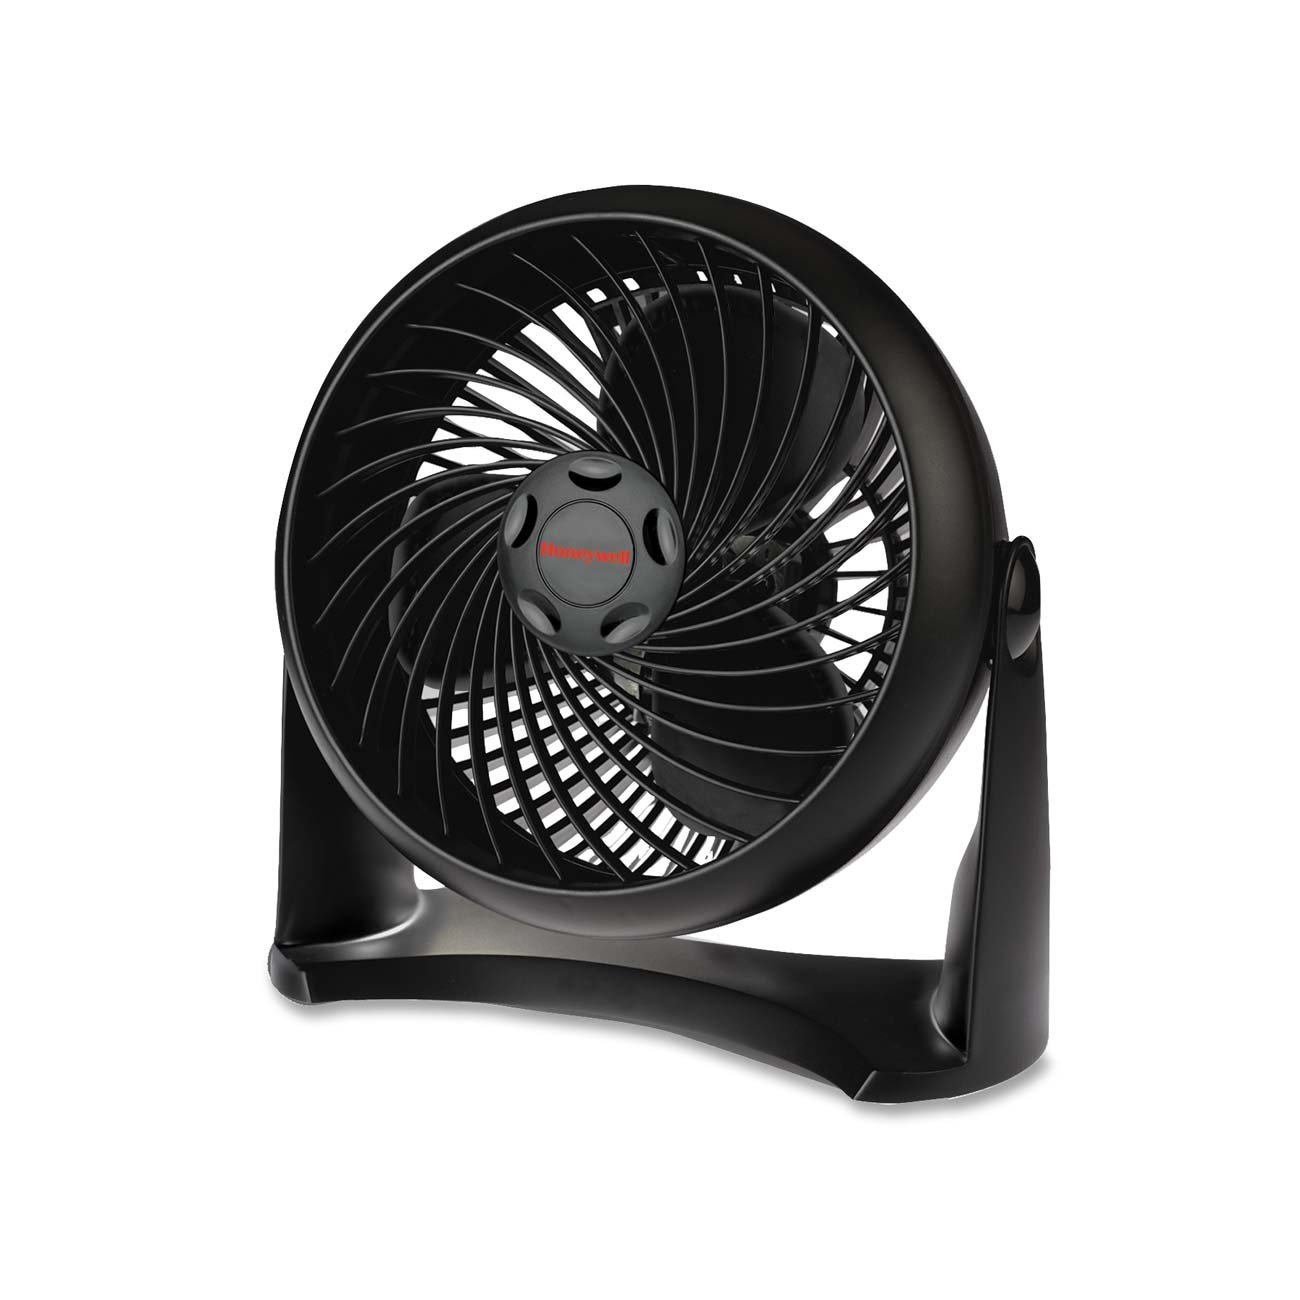 Honeywell TurboForce Fan Only $14.79 – 57% Savings